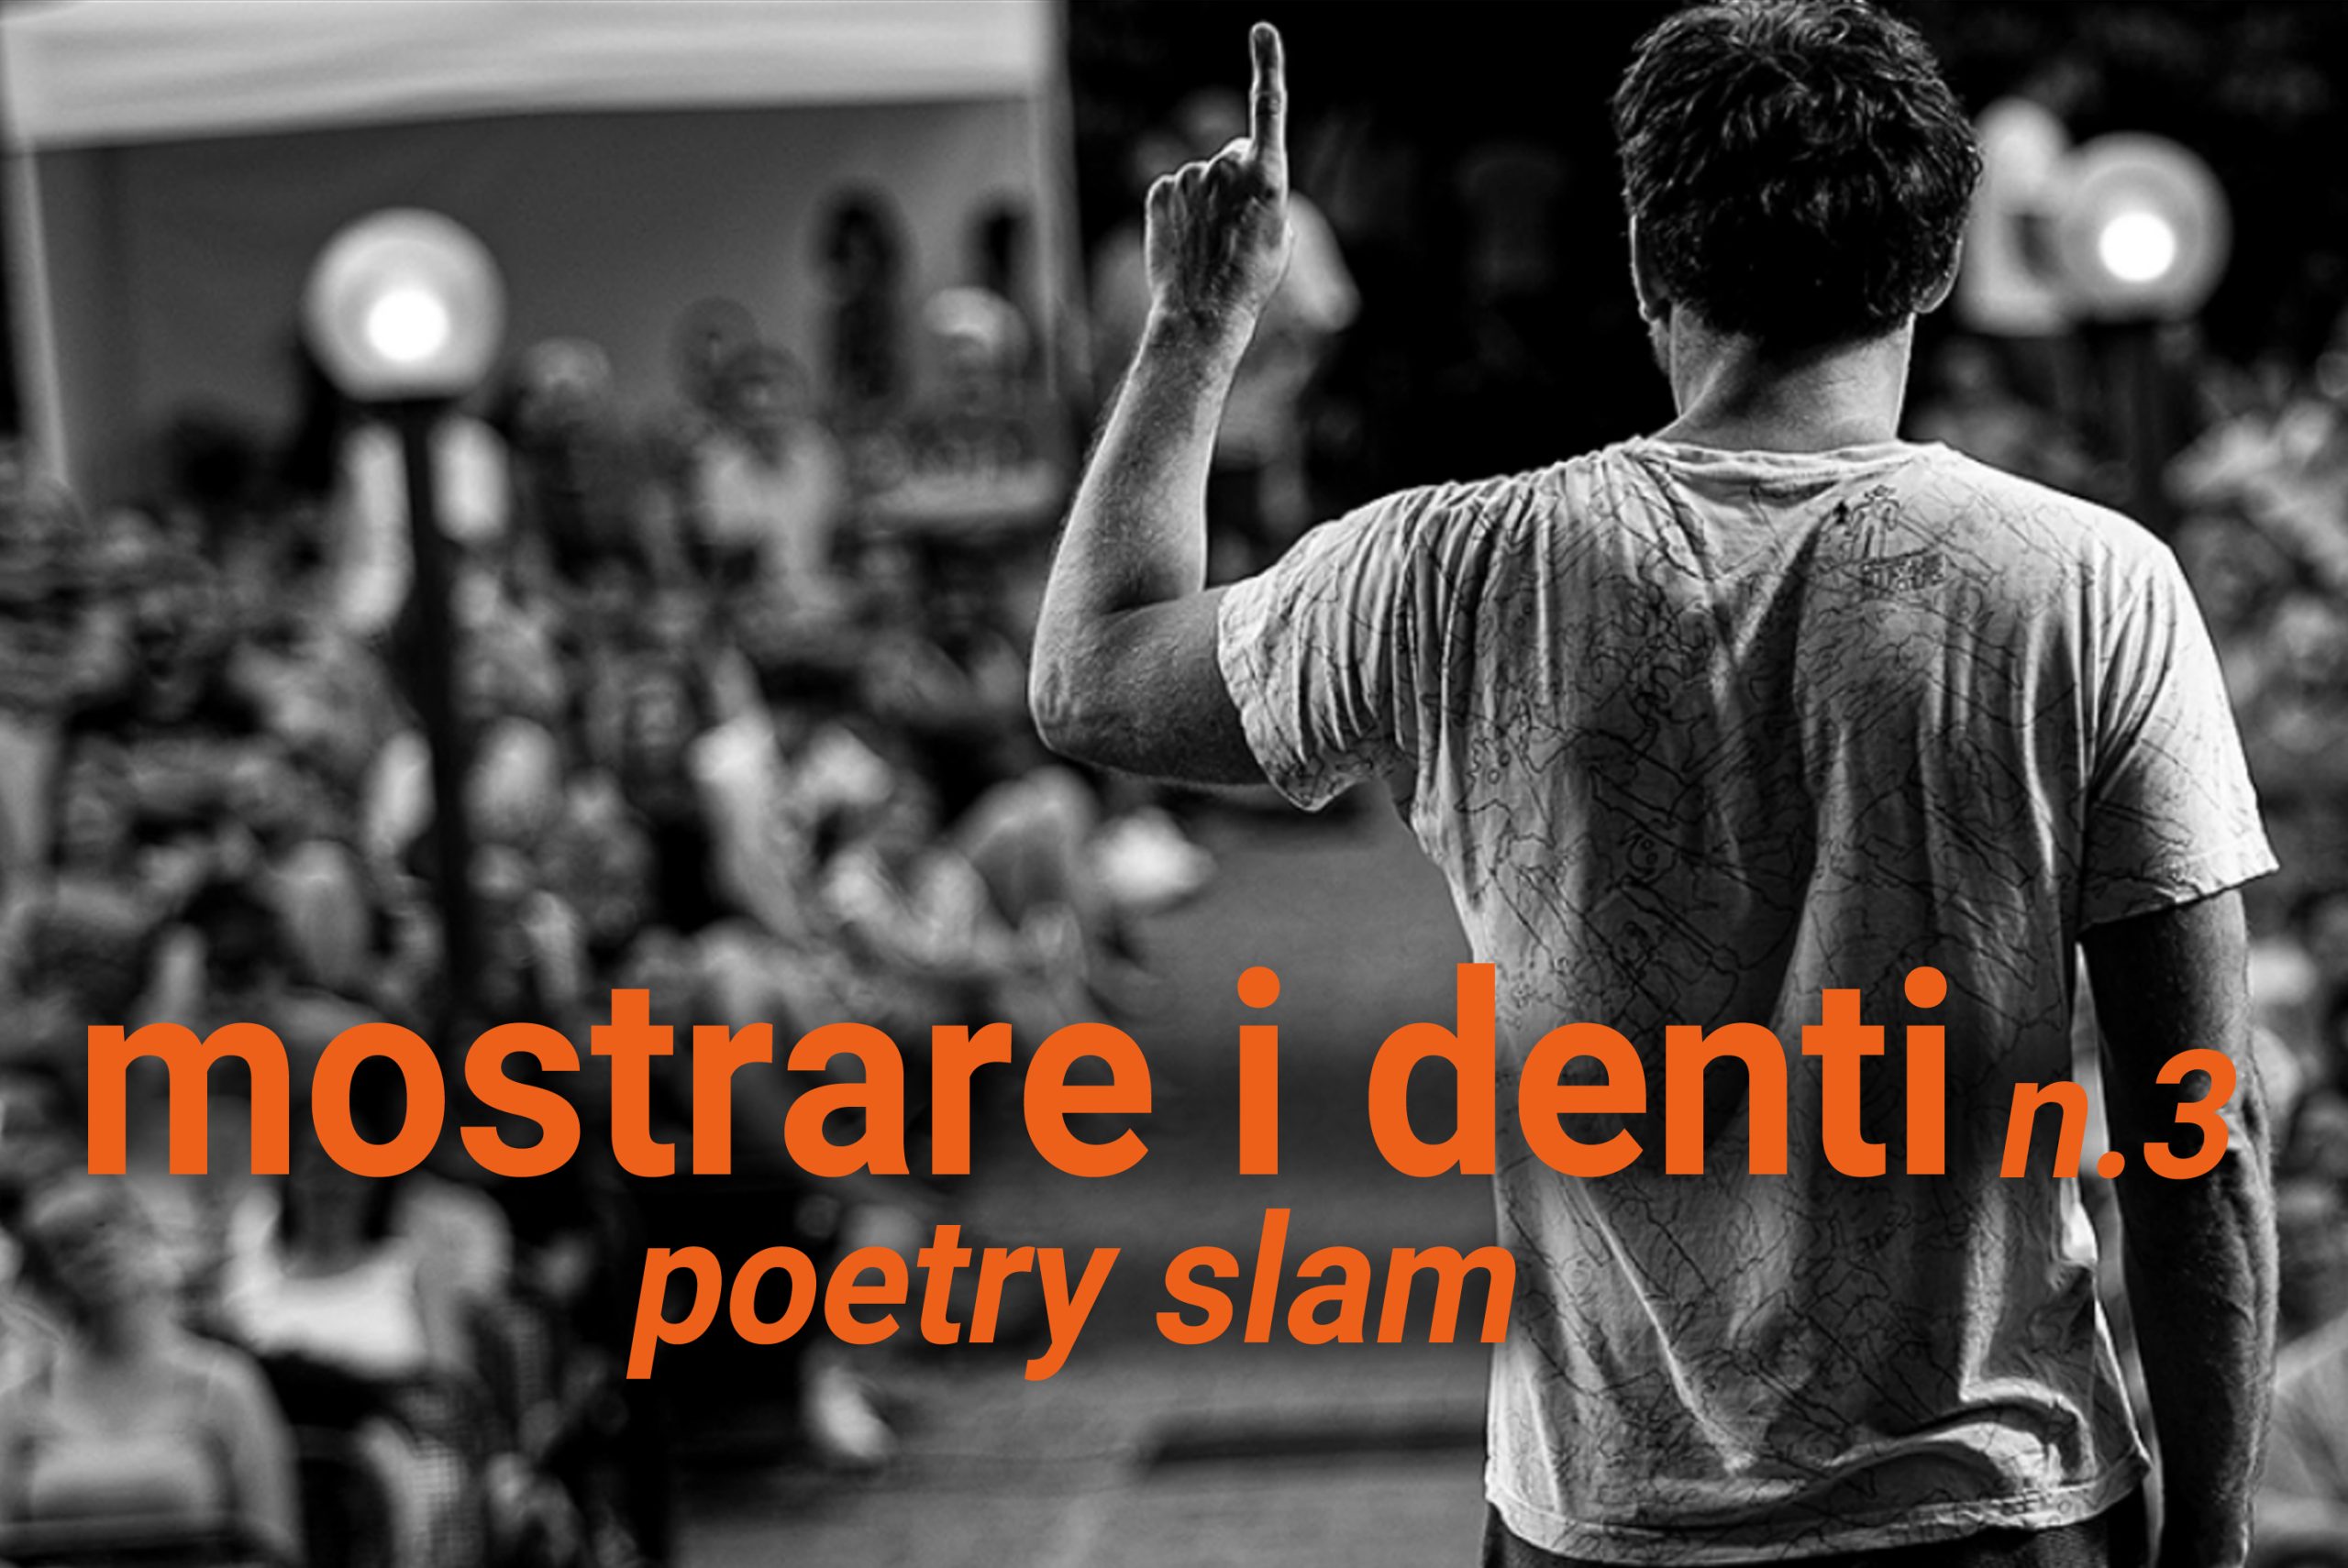 www.novantatrepercento n.26 "poetry slam", foto da mainslam.com